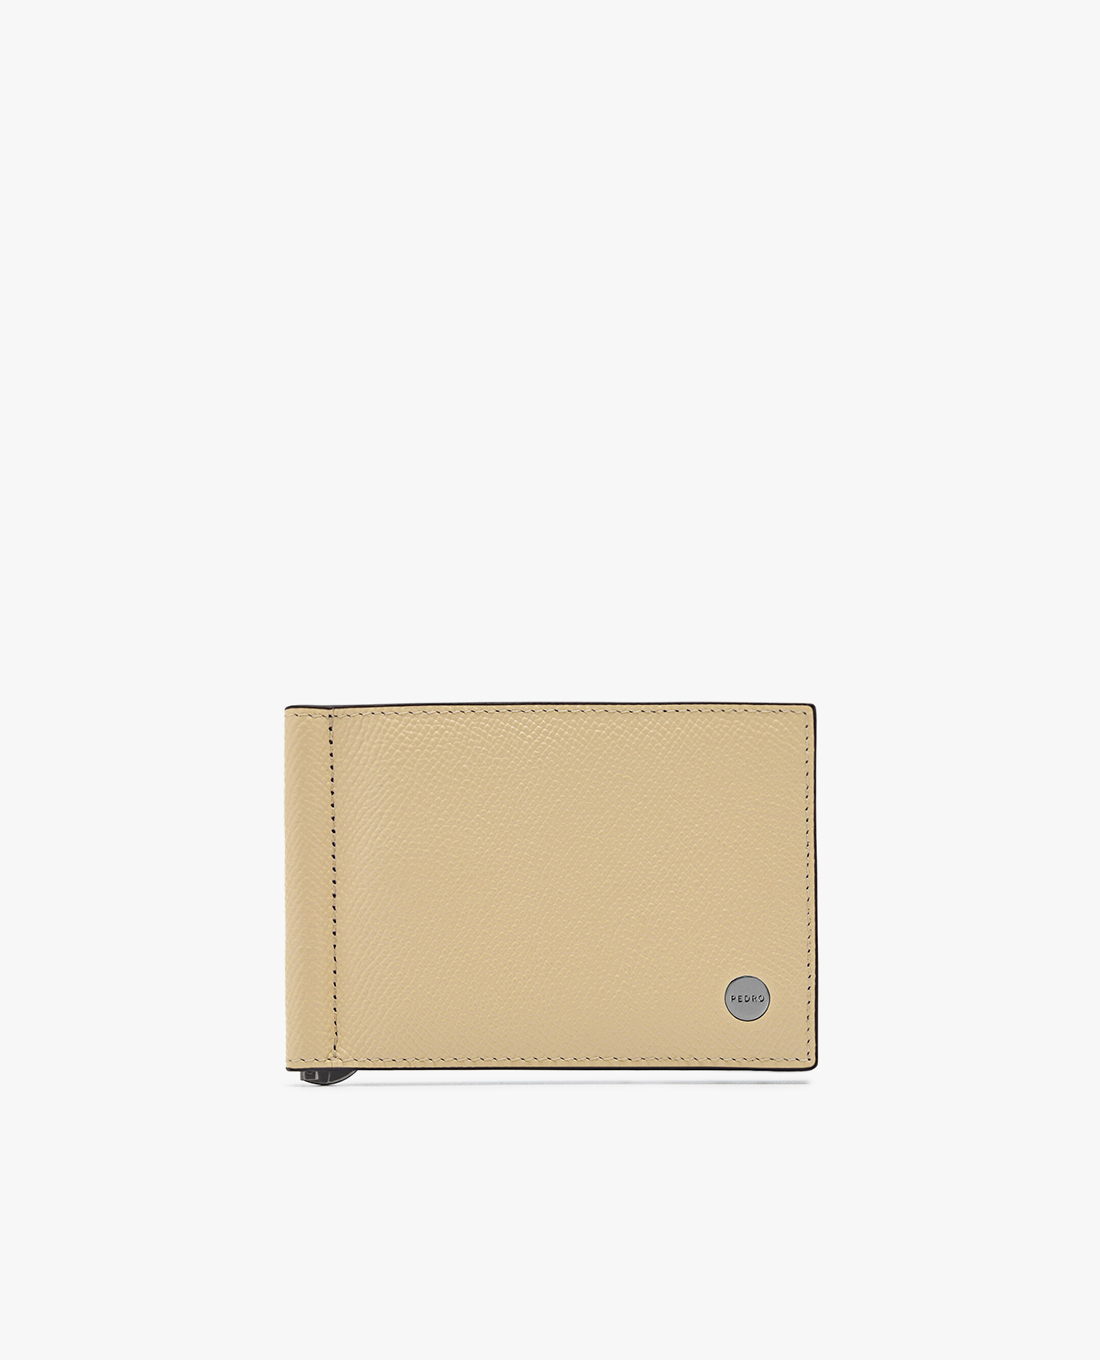 PEDRO - Ví nam đựng name card Leather Bi Fold Money Clip   - Hàng hiệu đẹp, giá đẹp